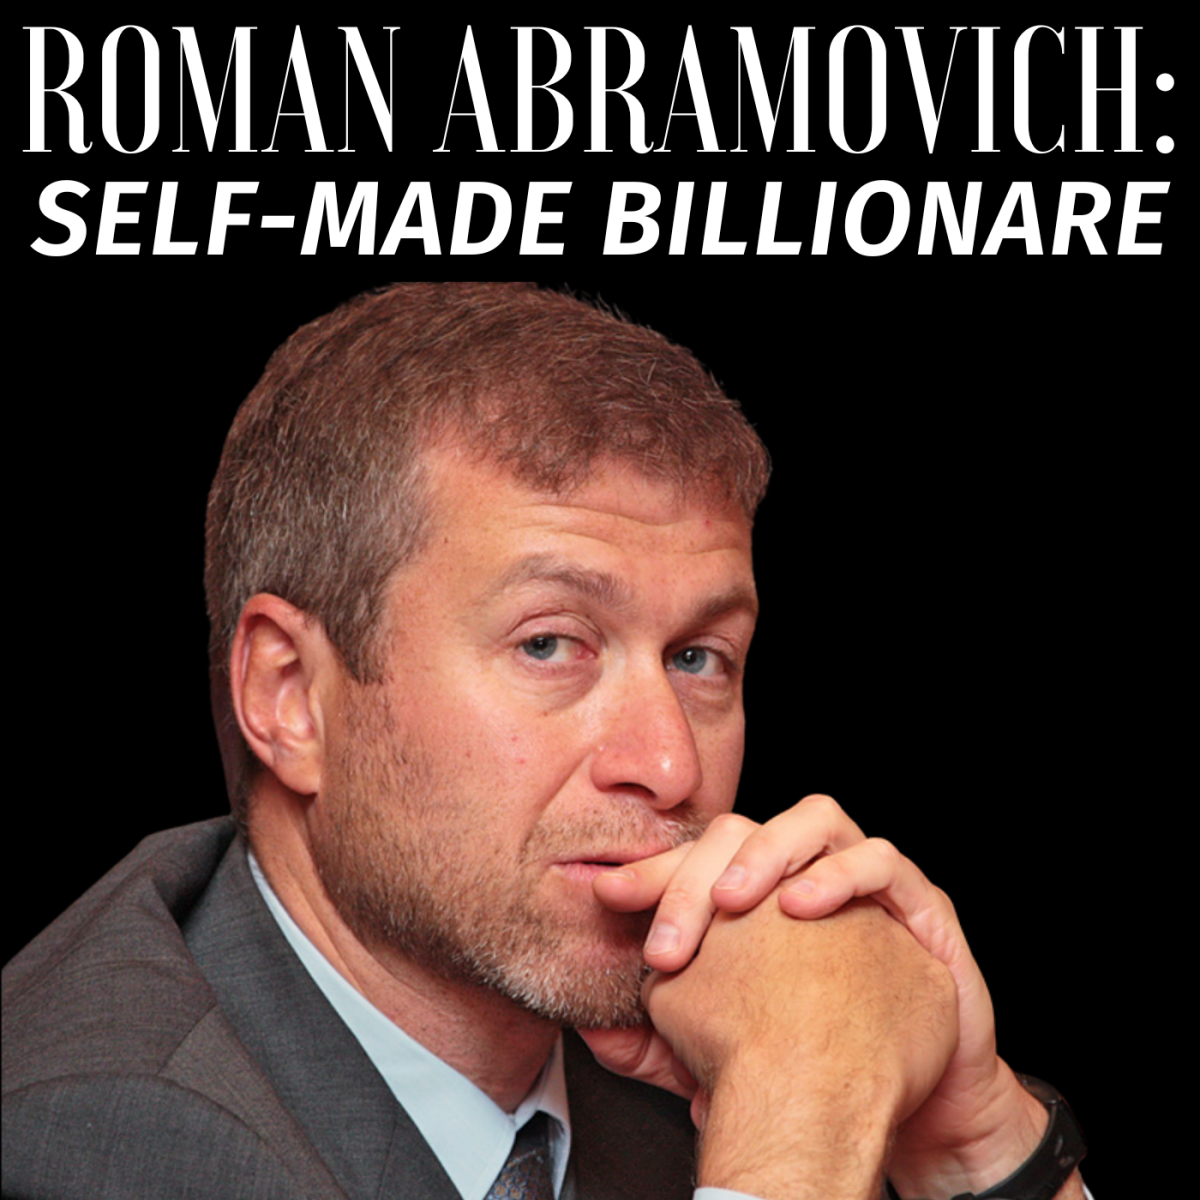 All about billionaire Roman Abramovich